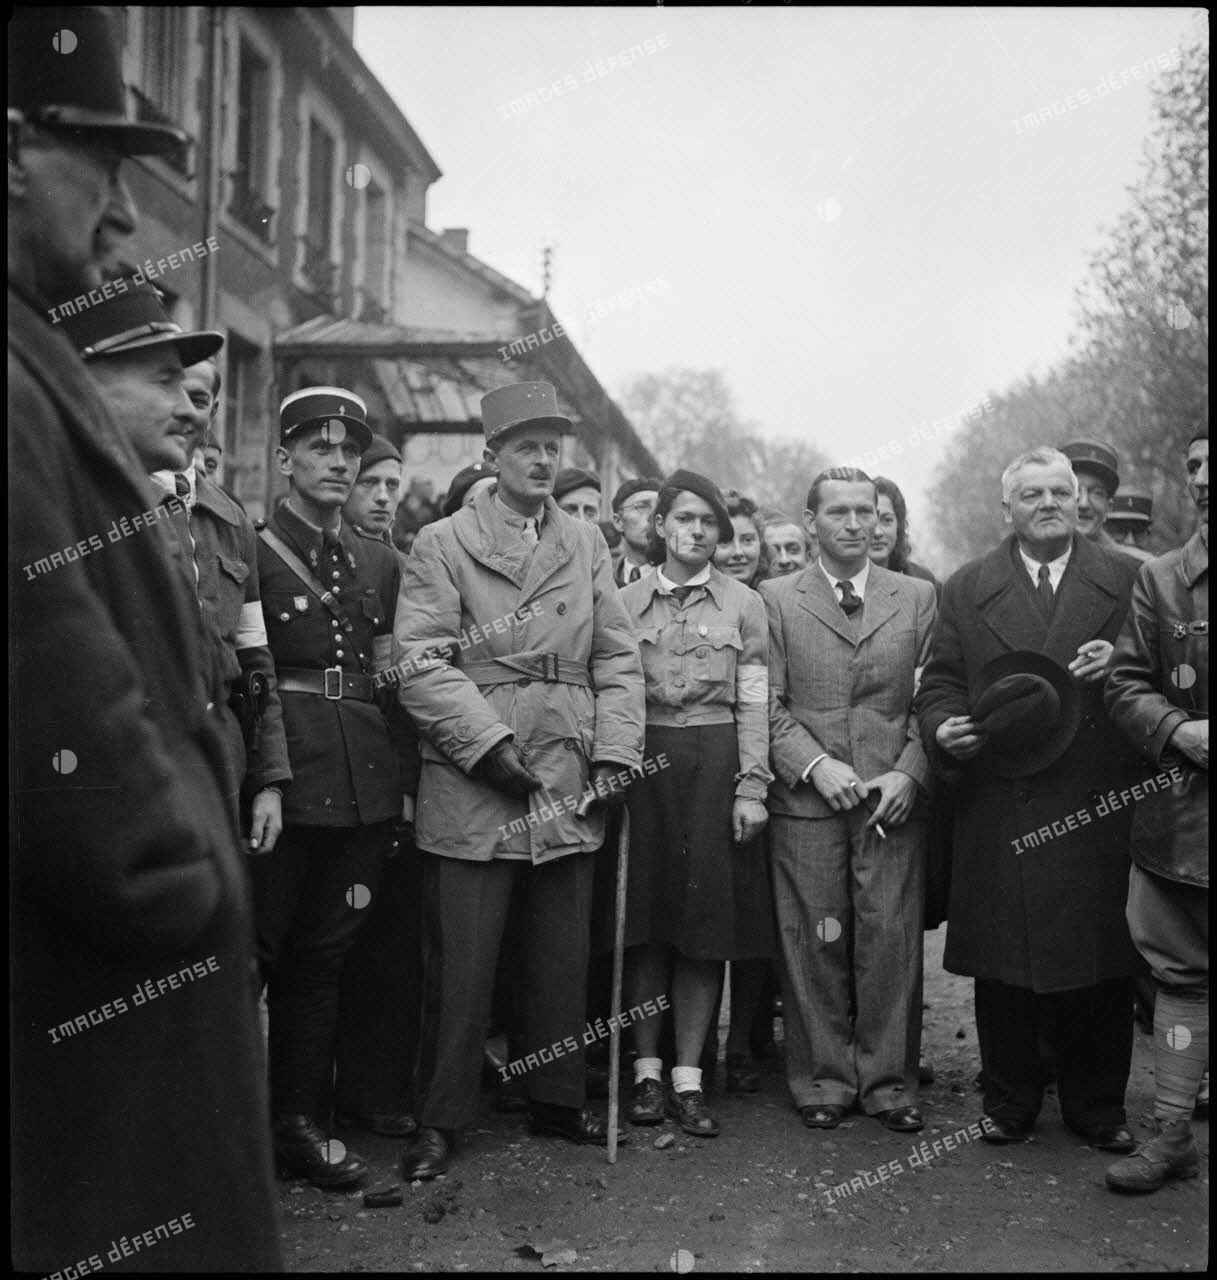 Le général Leclerc, commandant la 2e DB (division blindée), entouré d'autorités locales et de résistants dont Marcelle Cuny qui se tient à sa gauche, à Baccarat.